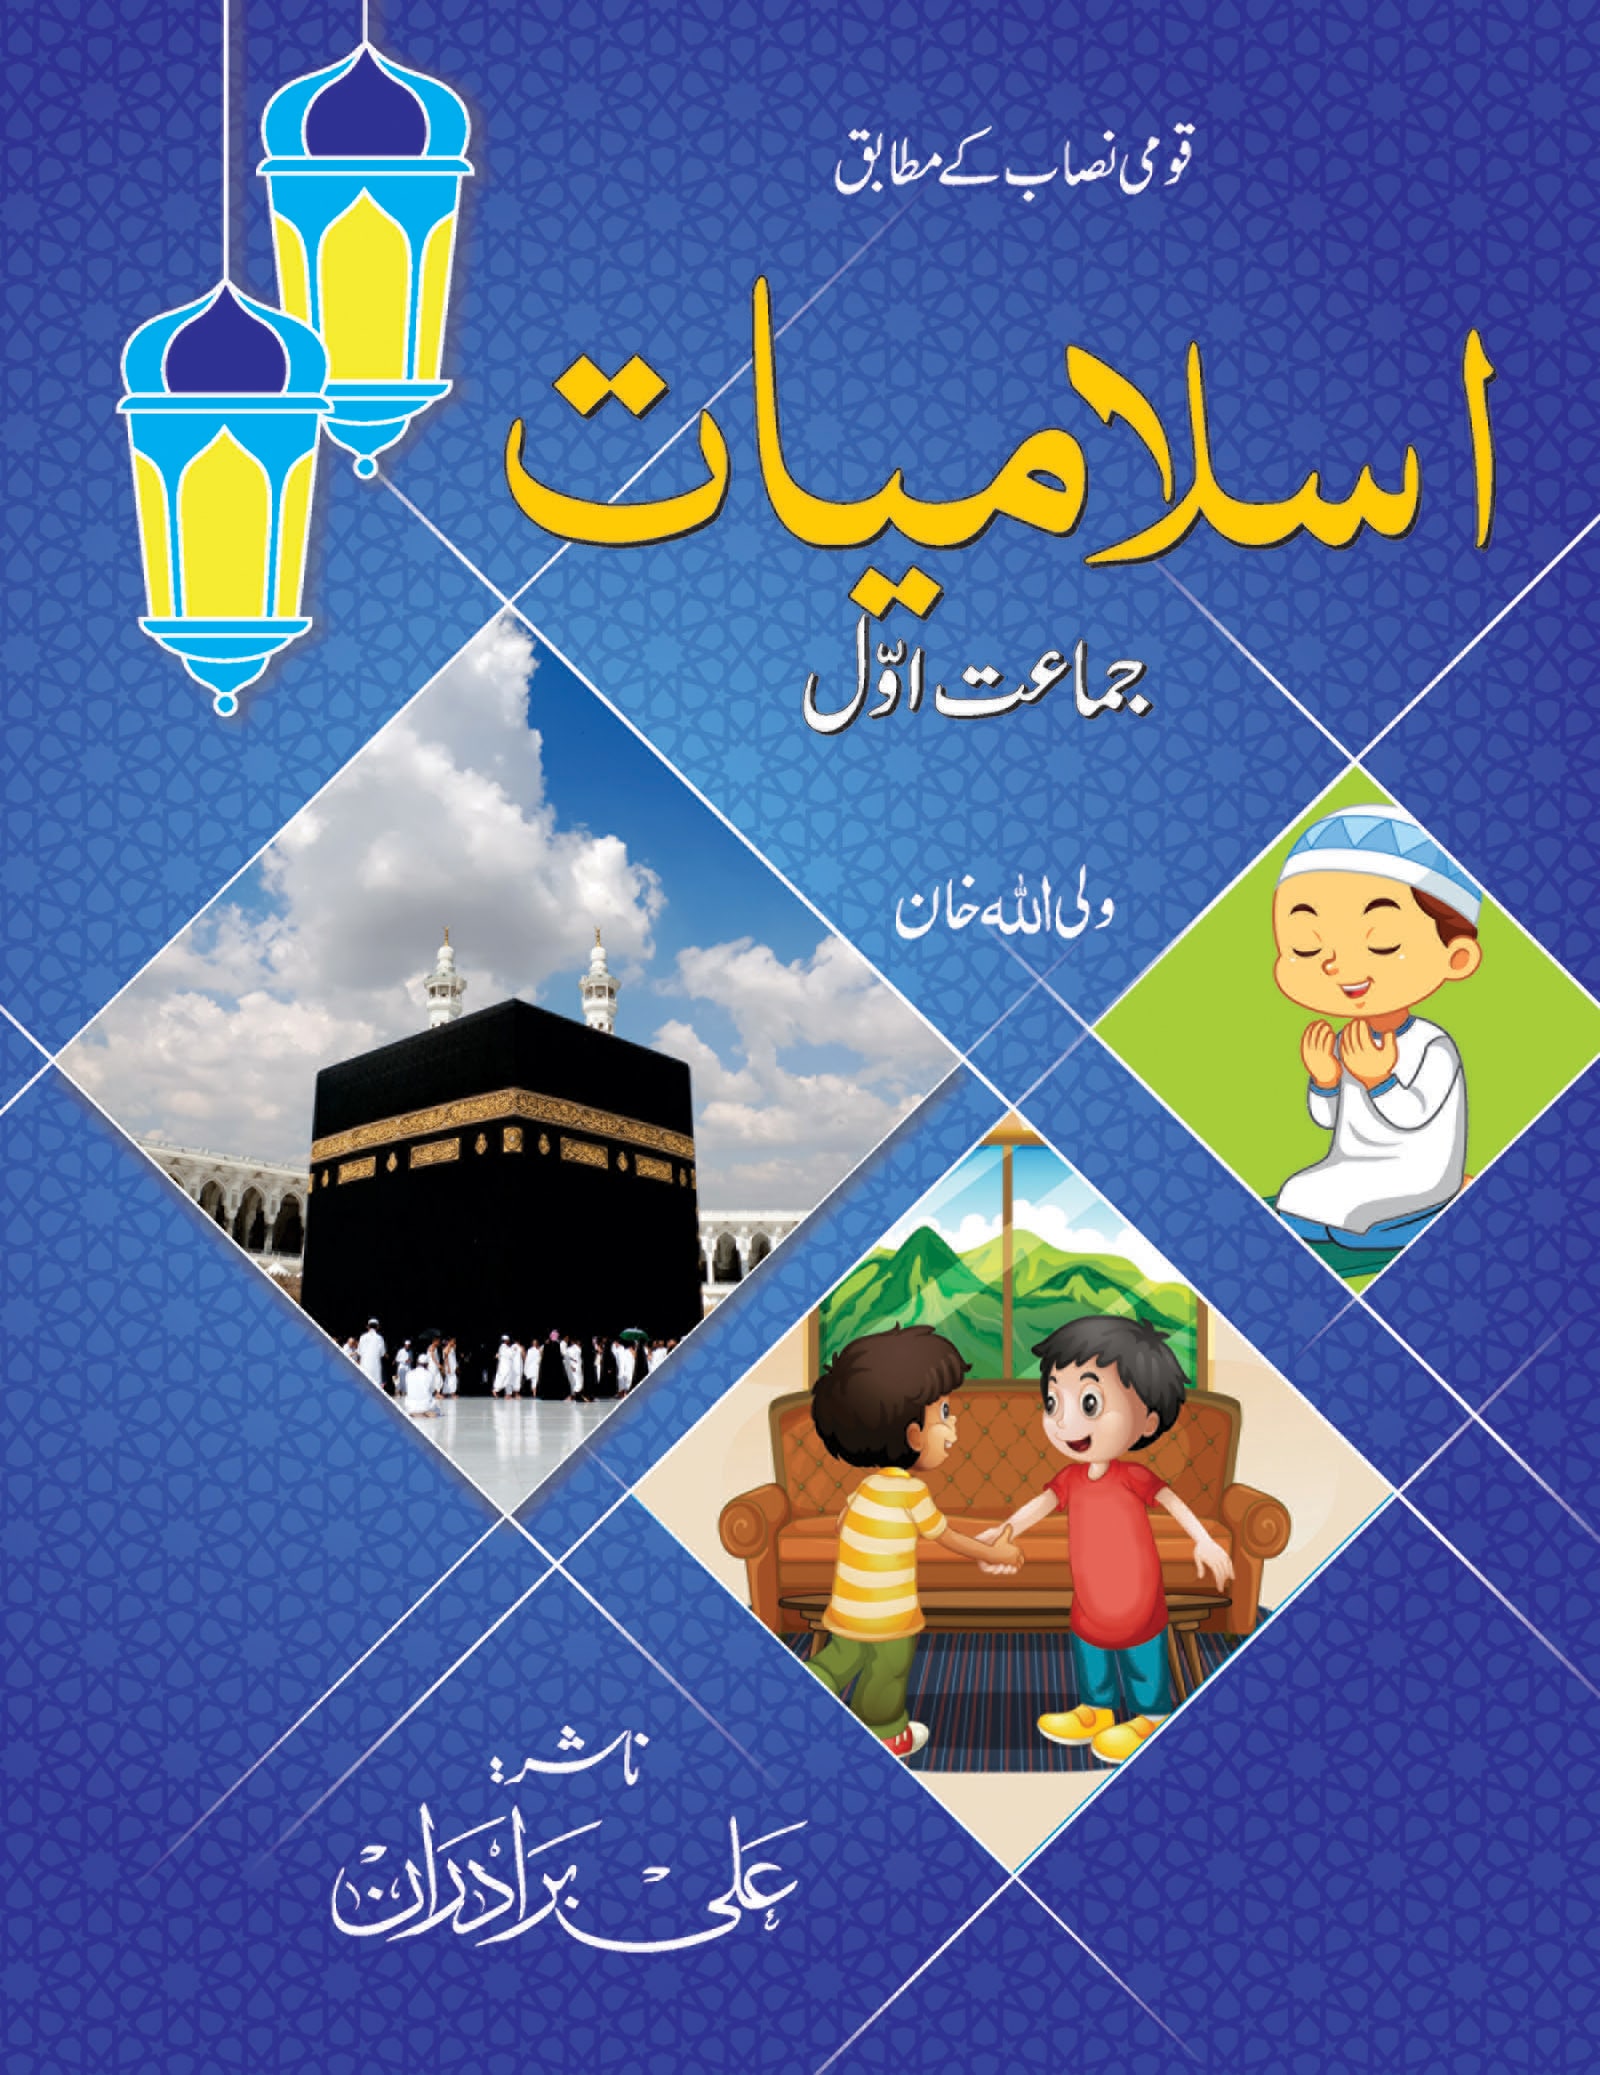 islamiyat-1-alibrotheran